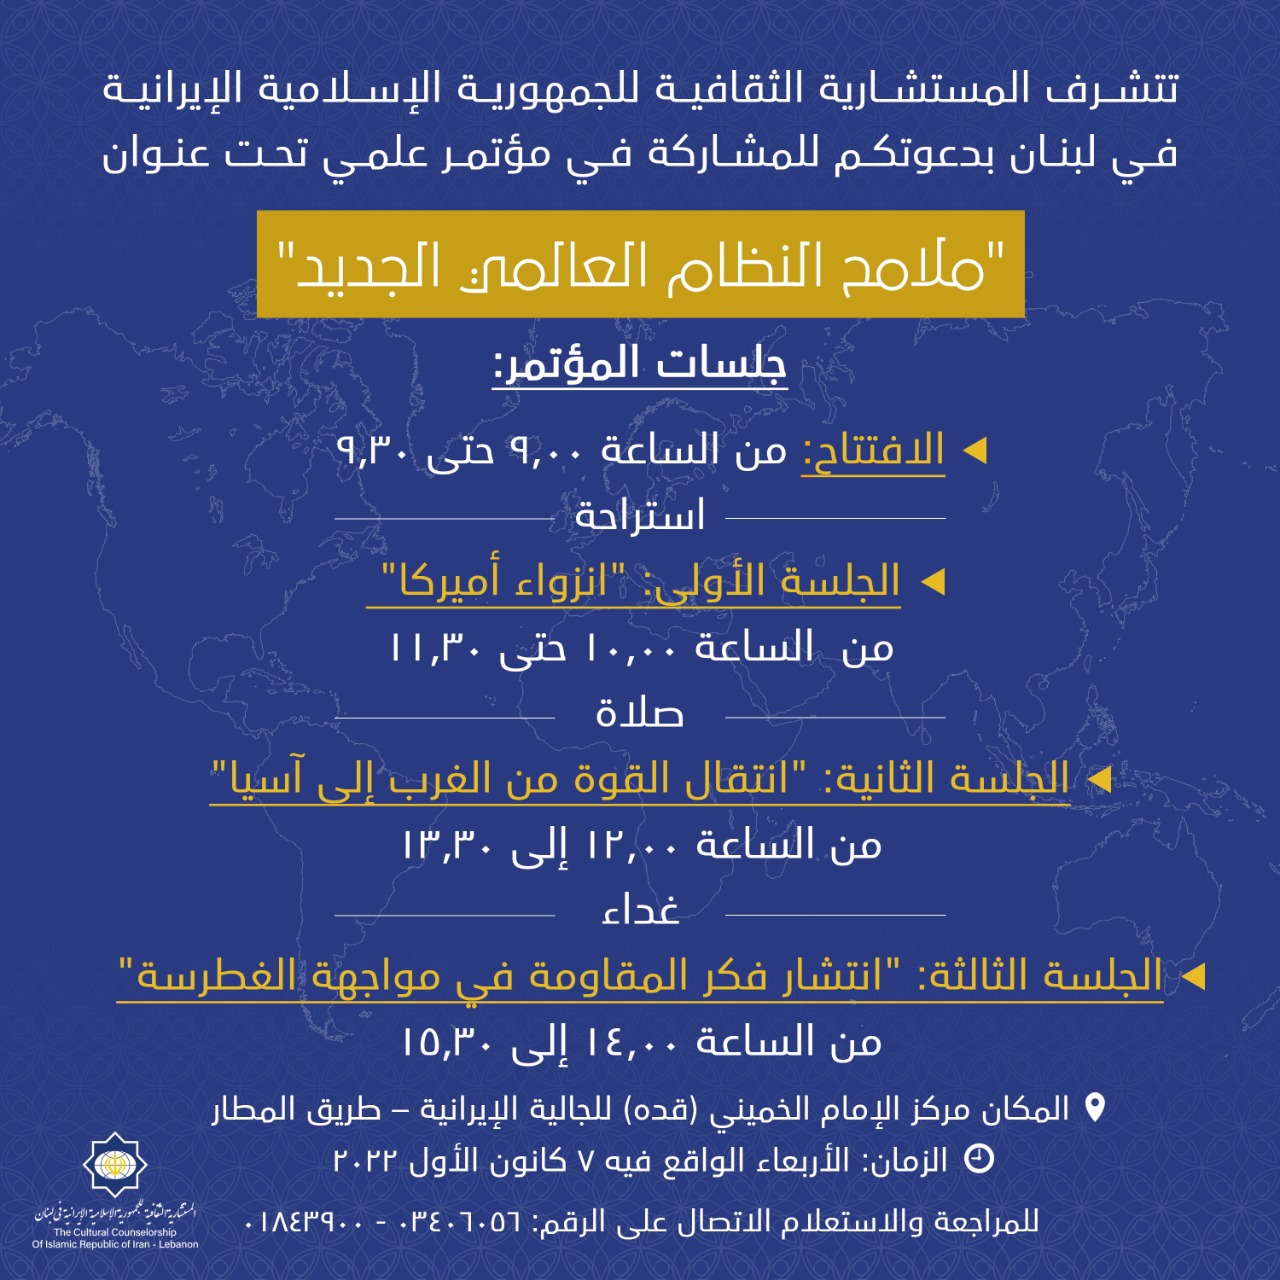 المستشارية الثقافية للجمهورية الاسلامية في ايران تنظم مؤتمر علمي بعنوان “ملامح النظام العالمي الجديد”